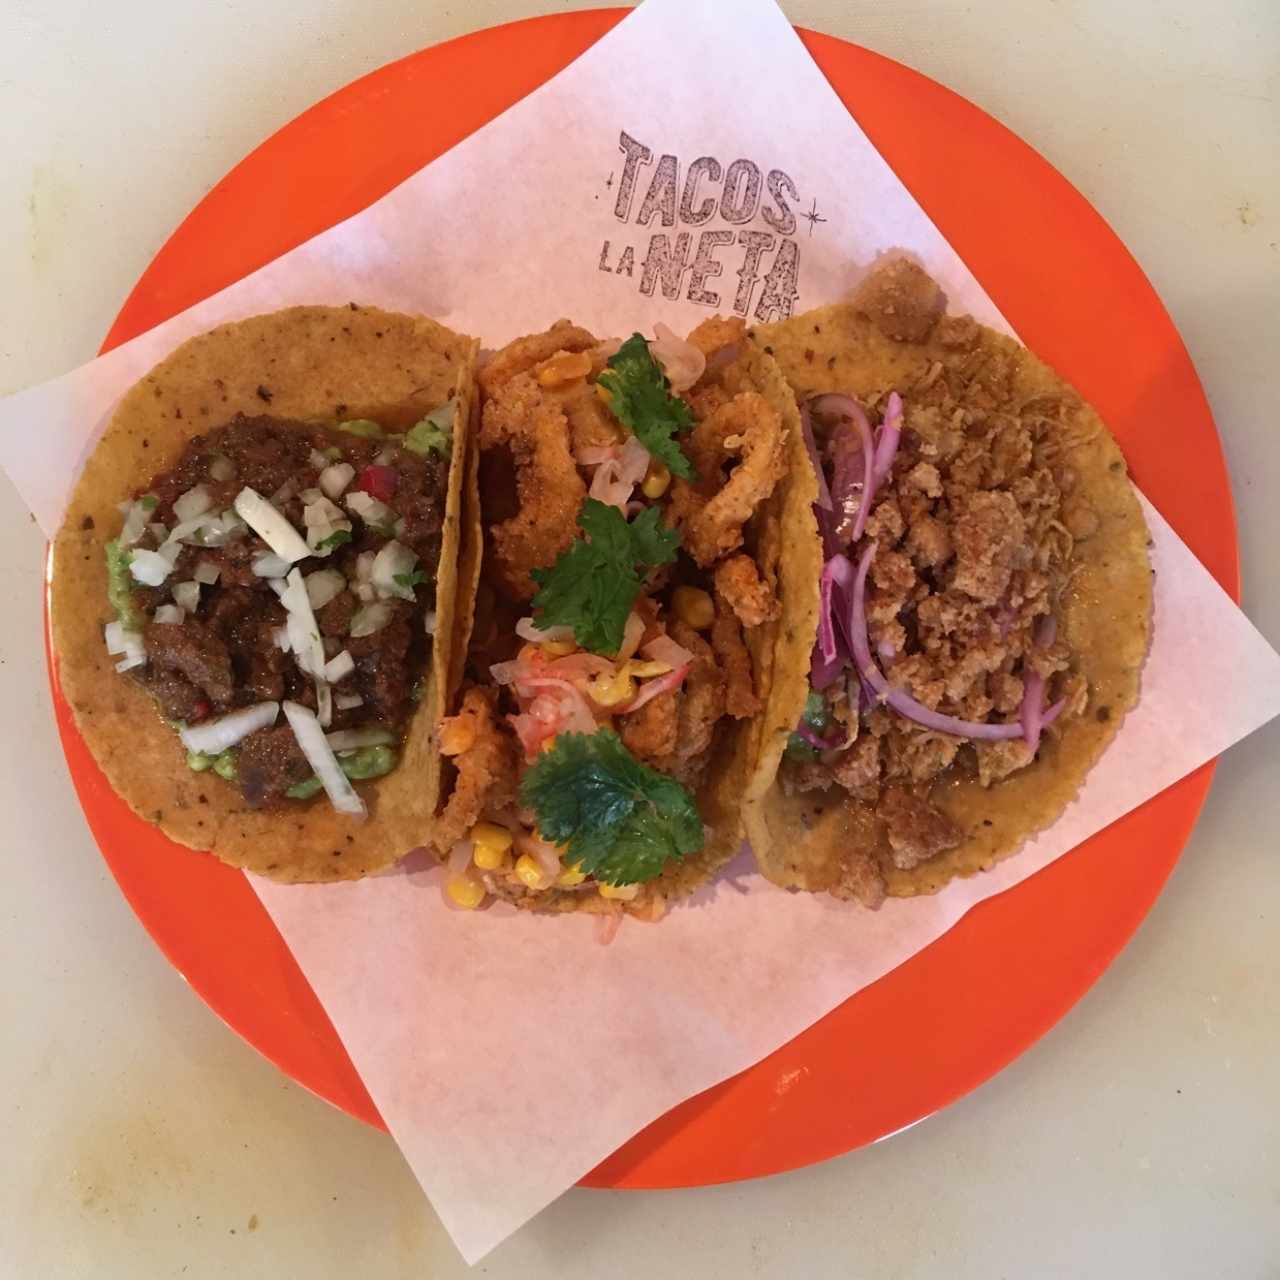 Tacos: Bisteck, mariscos y cohinita Pibil! ❤️